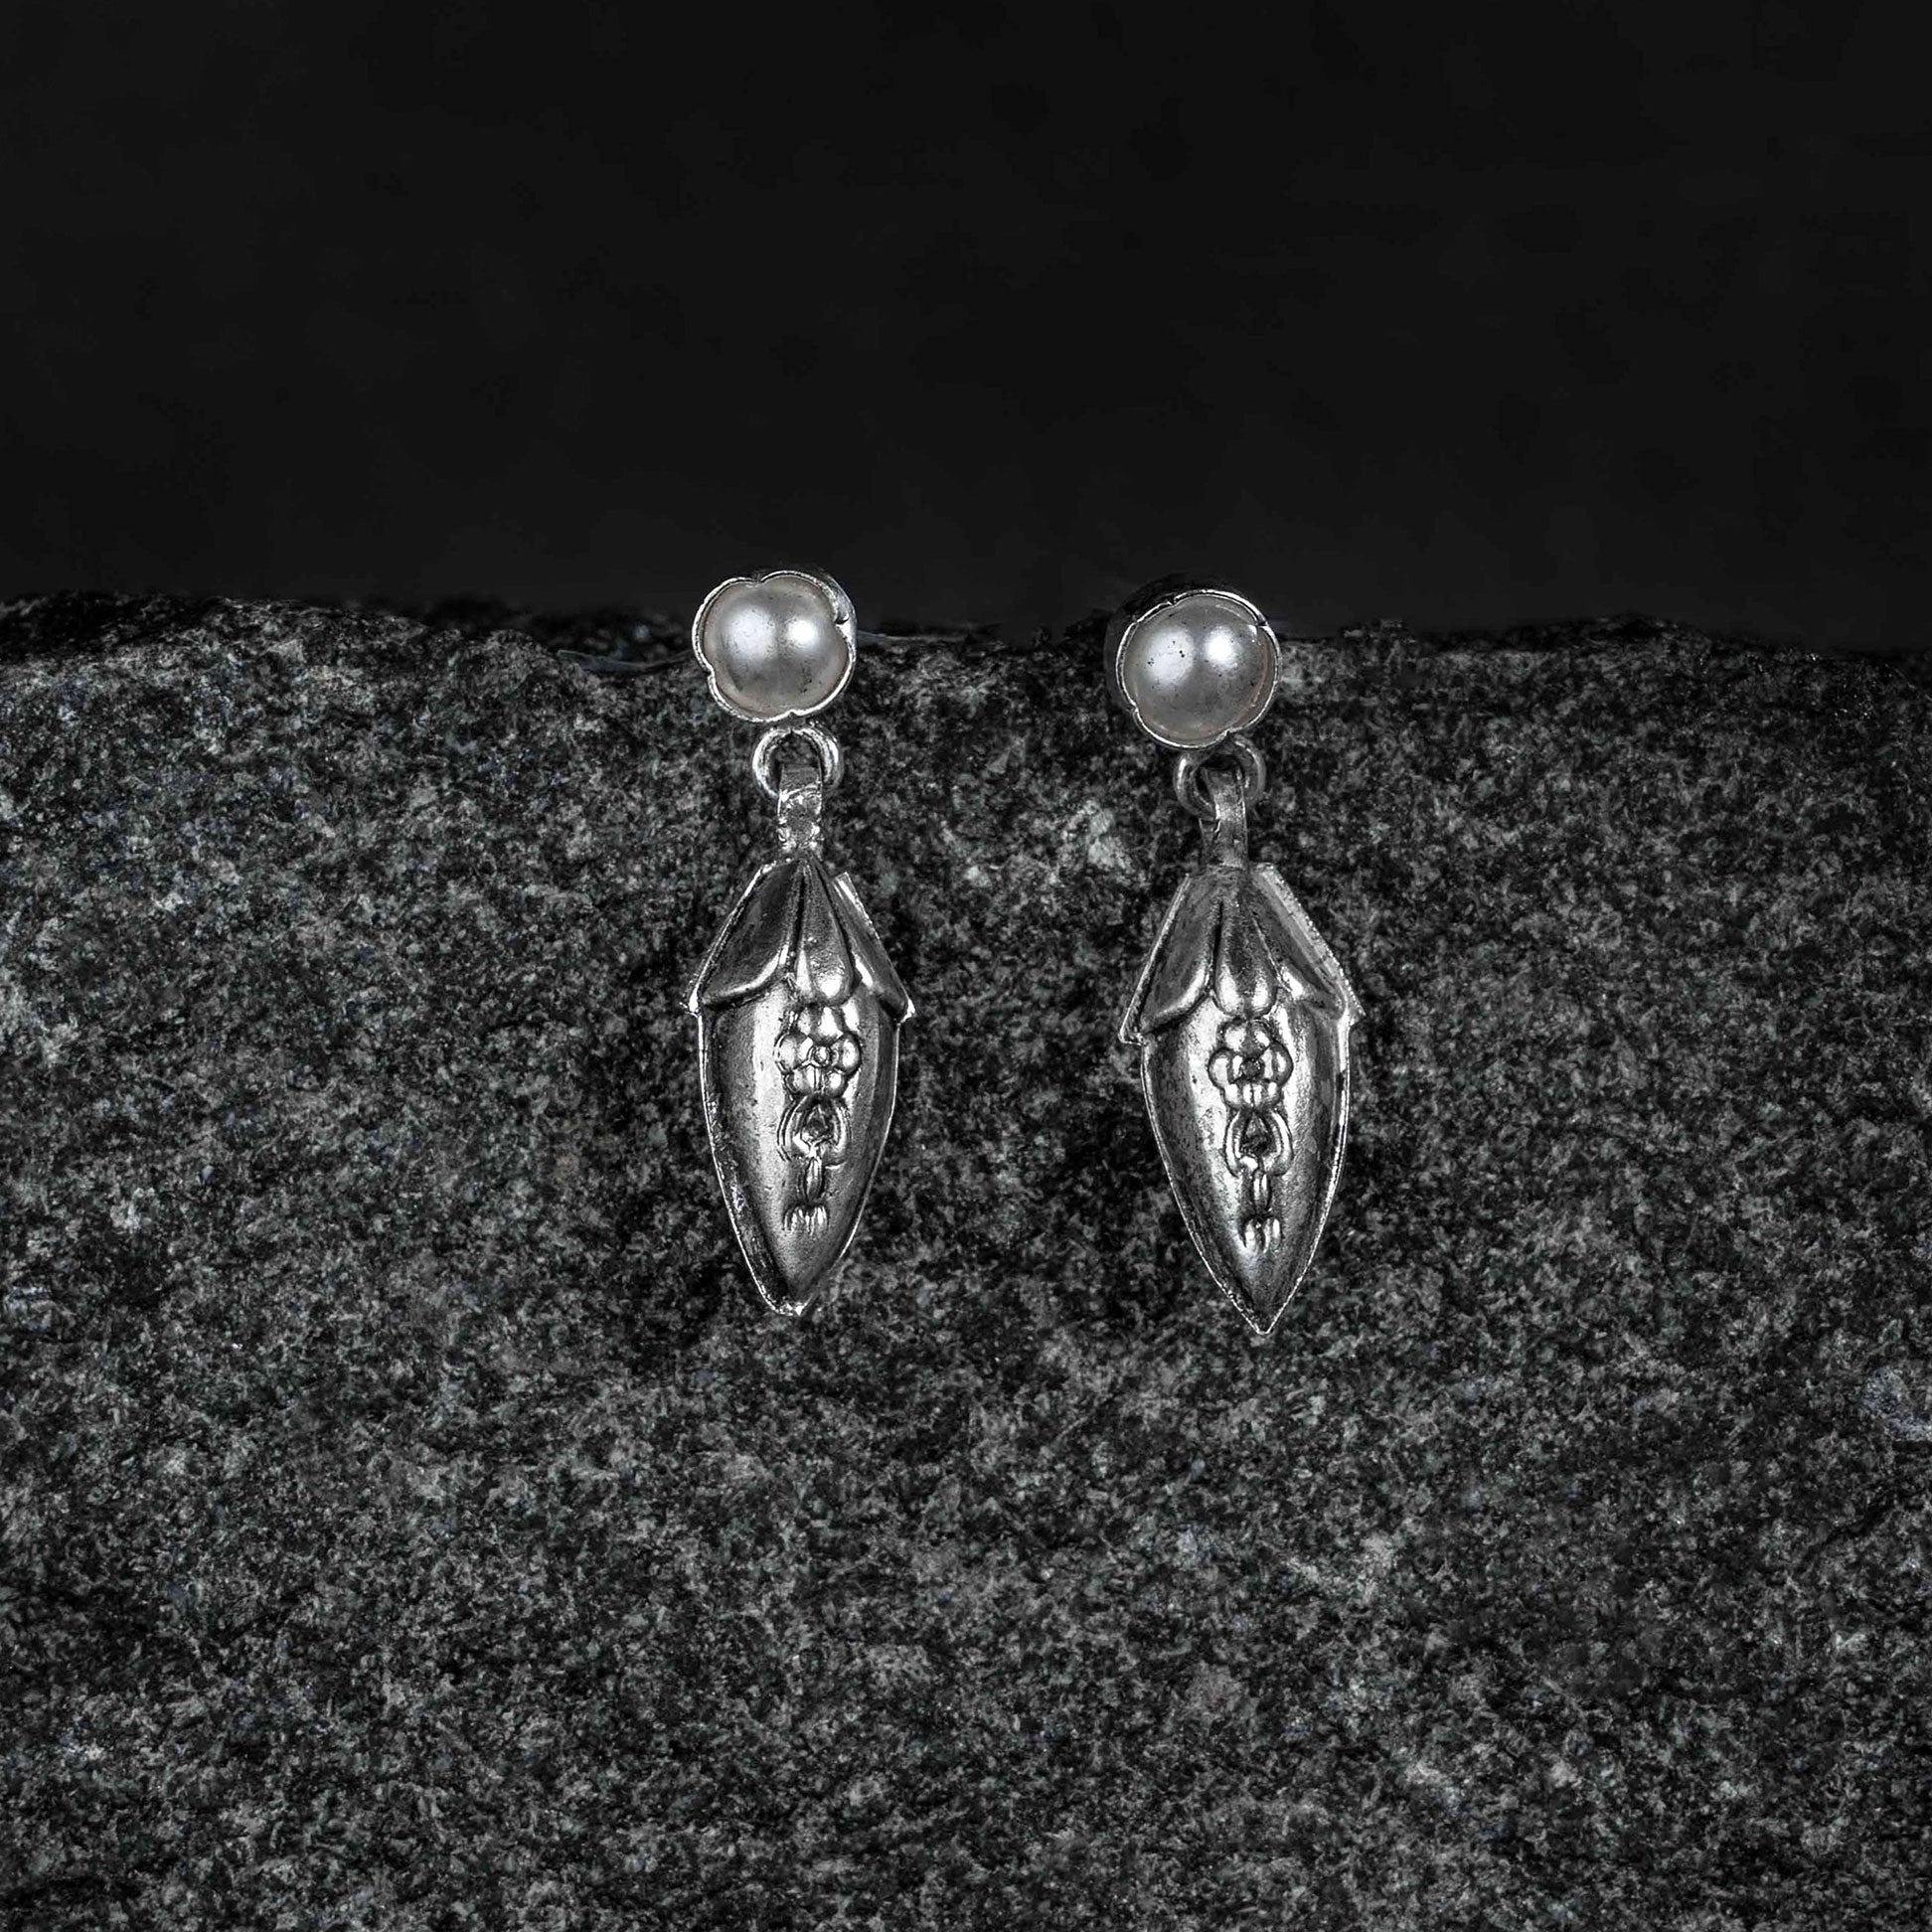 Buy Silver & White Earrings for Women by Nemichand Jewels Online | Ajio.com